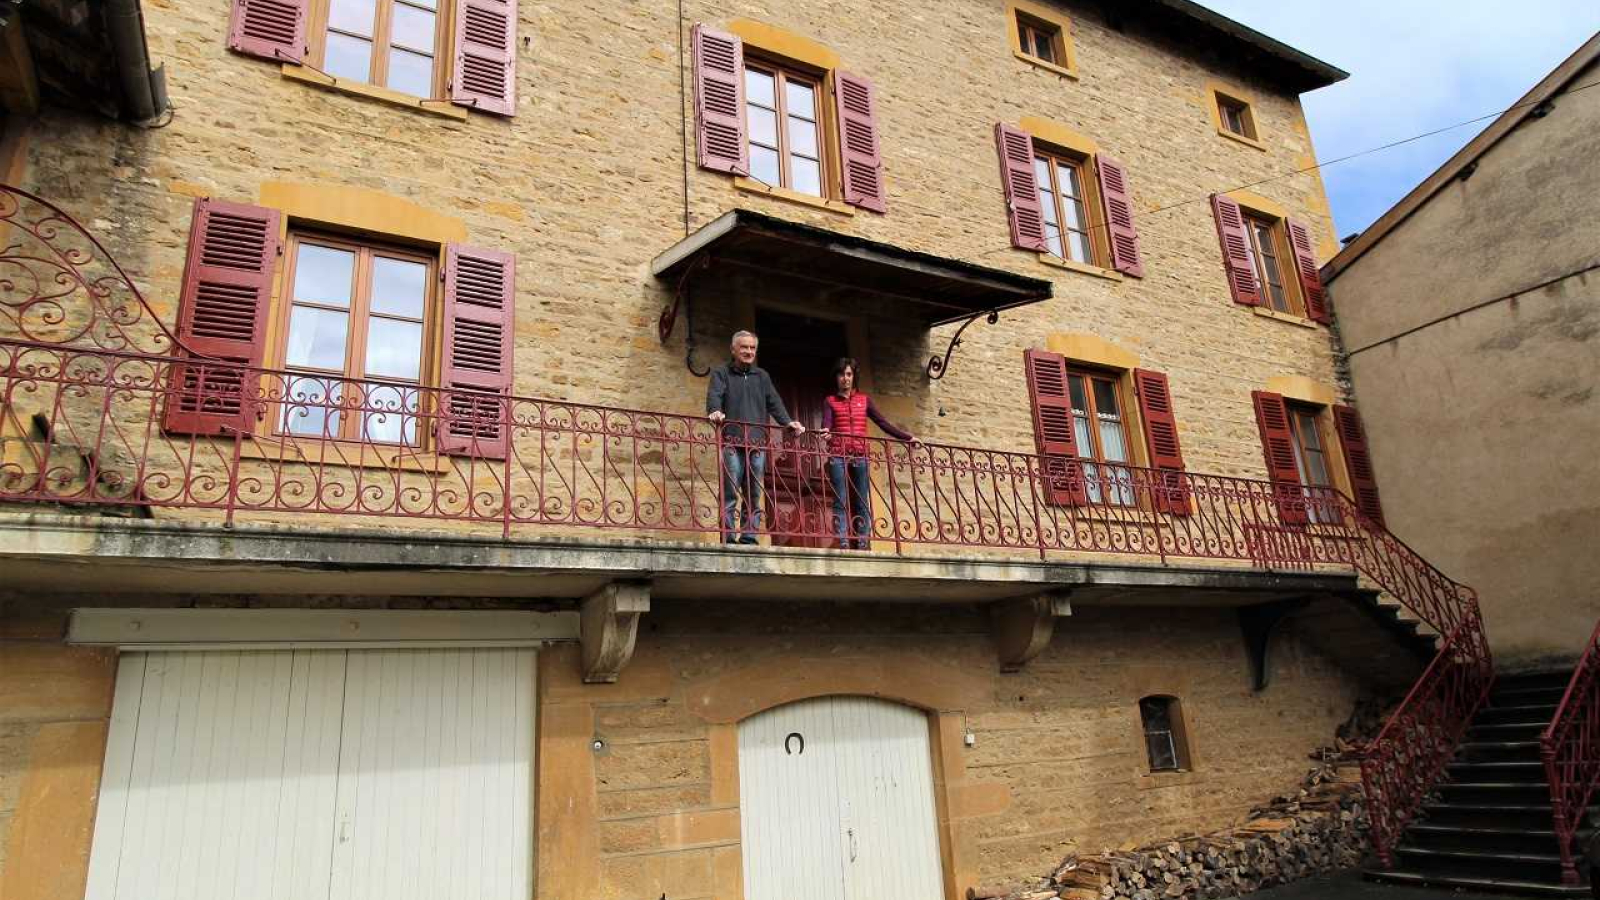 Chambres d'hôtes 'Bienvenue à Dalbepierre' à St Laurent d'Oingt/Val d'Oingt dans le Beaujolais - Rhône : la maison en Pierres Dorées.